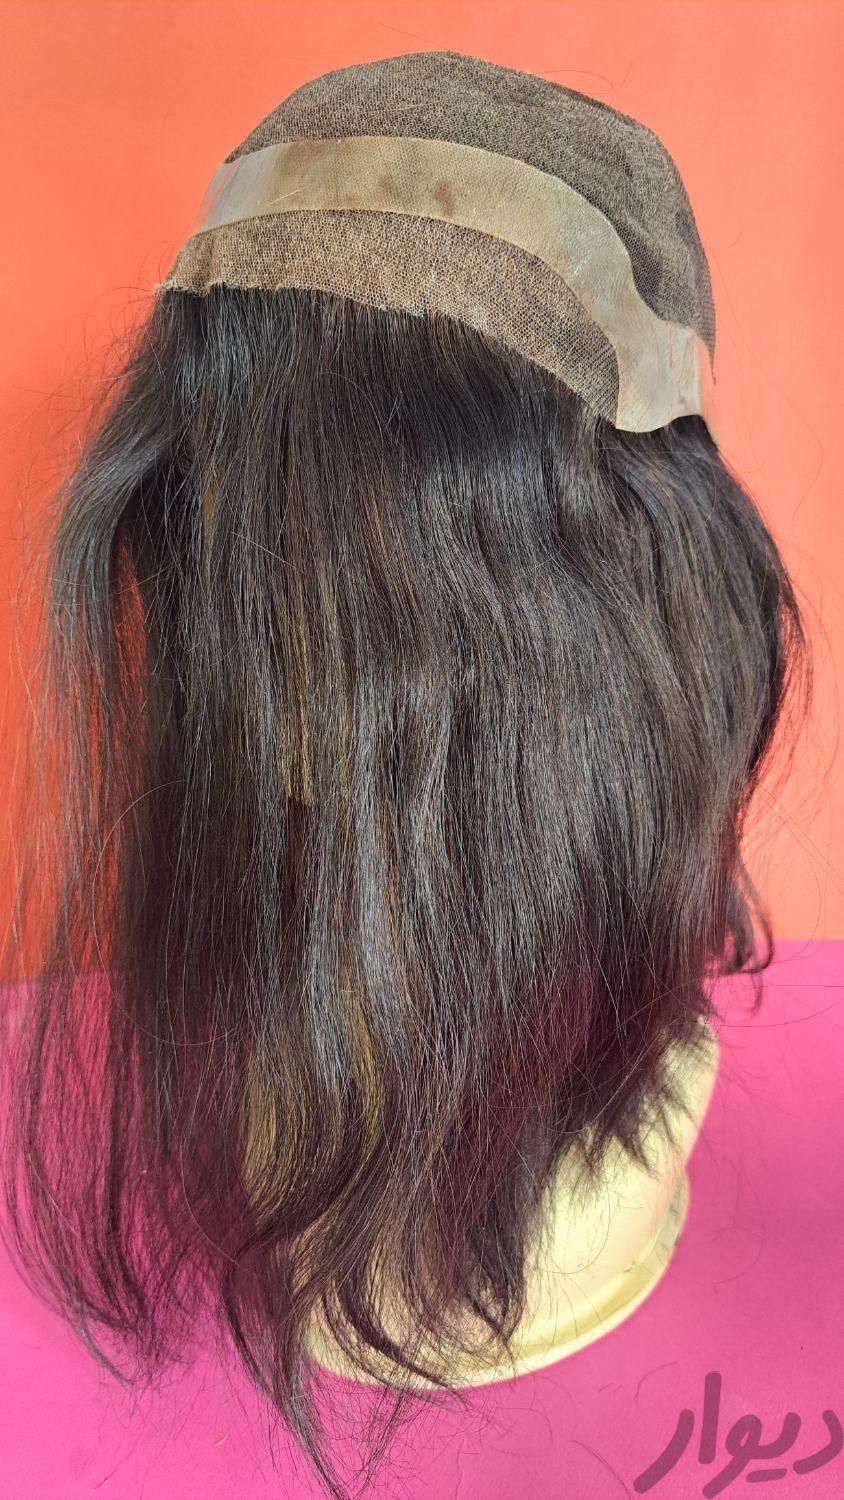 پروتز موی زنانه با موی صد در صد طبیعی انسان|وسایل آرایشی، بهداشتی و درمانی|تهران, میدان ولیعصر|دیوار